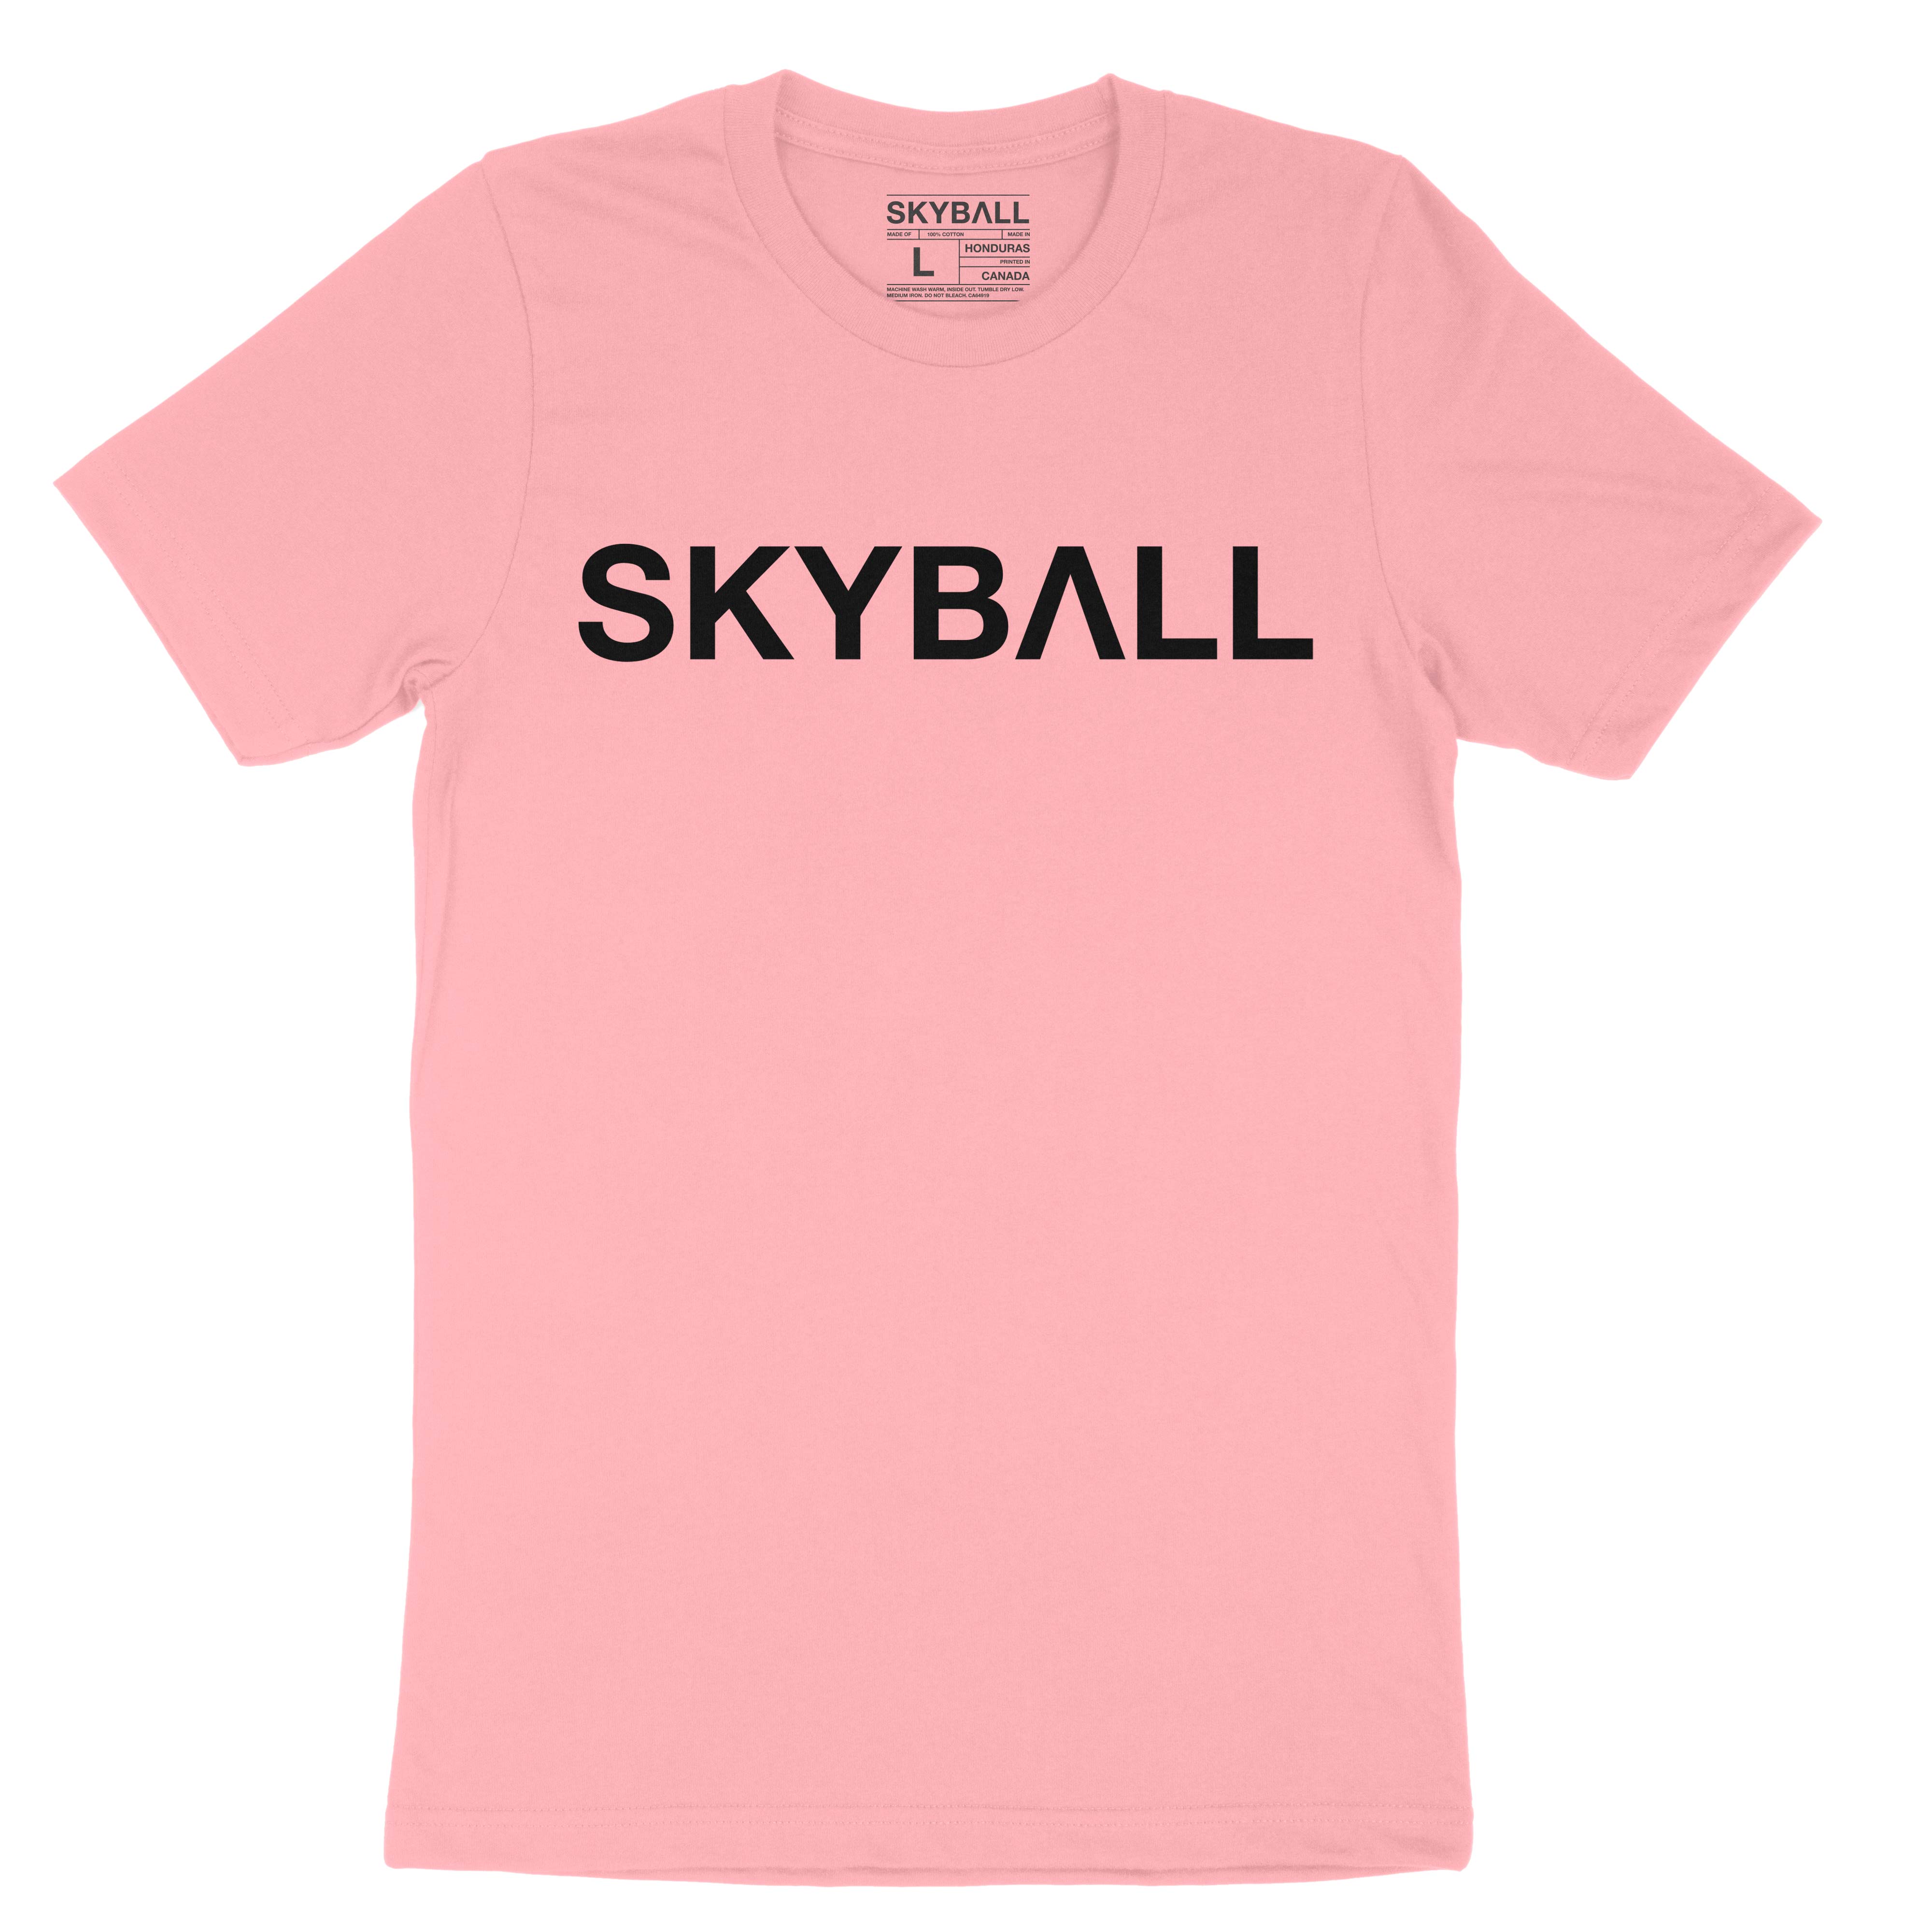 Skyball Beach Volleyball Apparel - Original T-Shirt